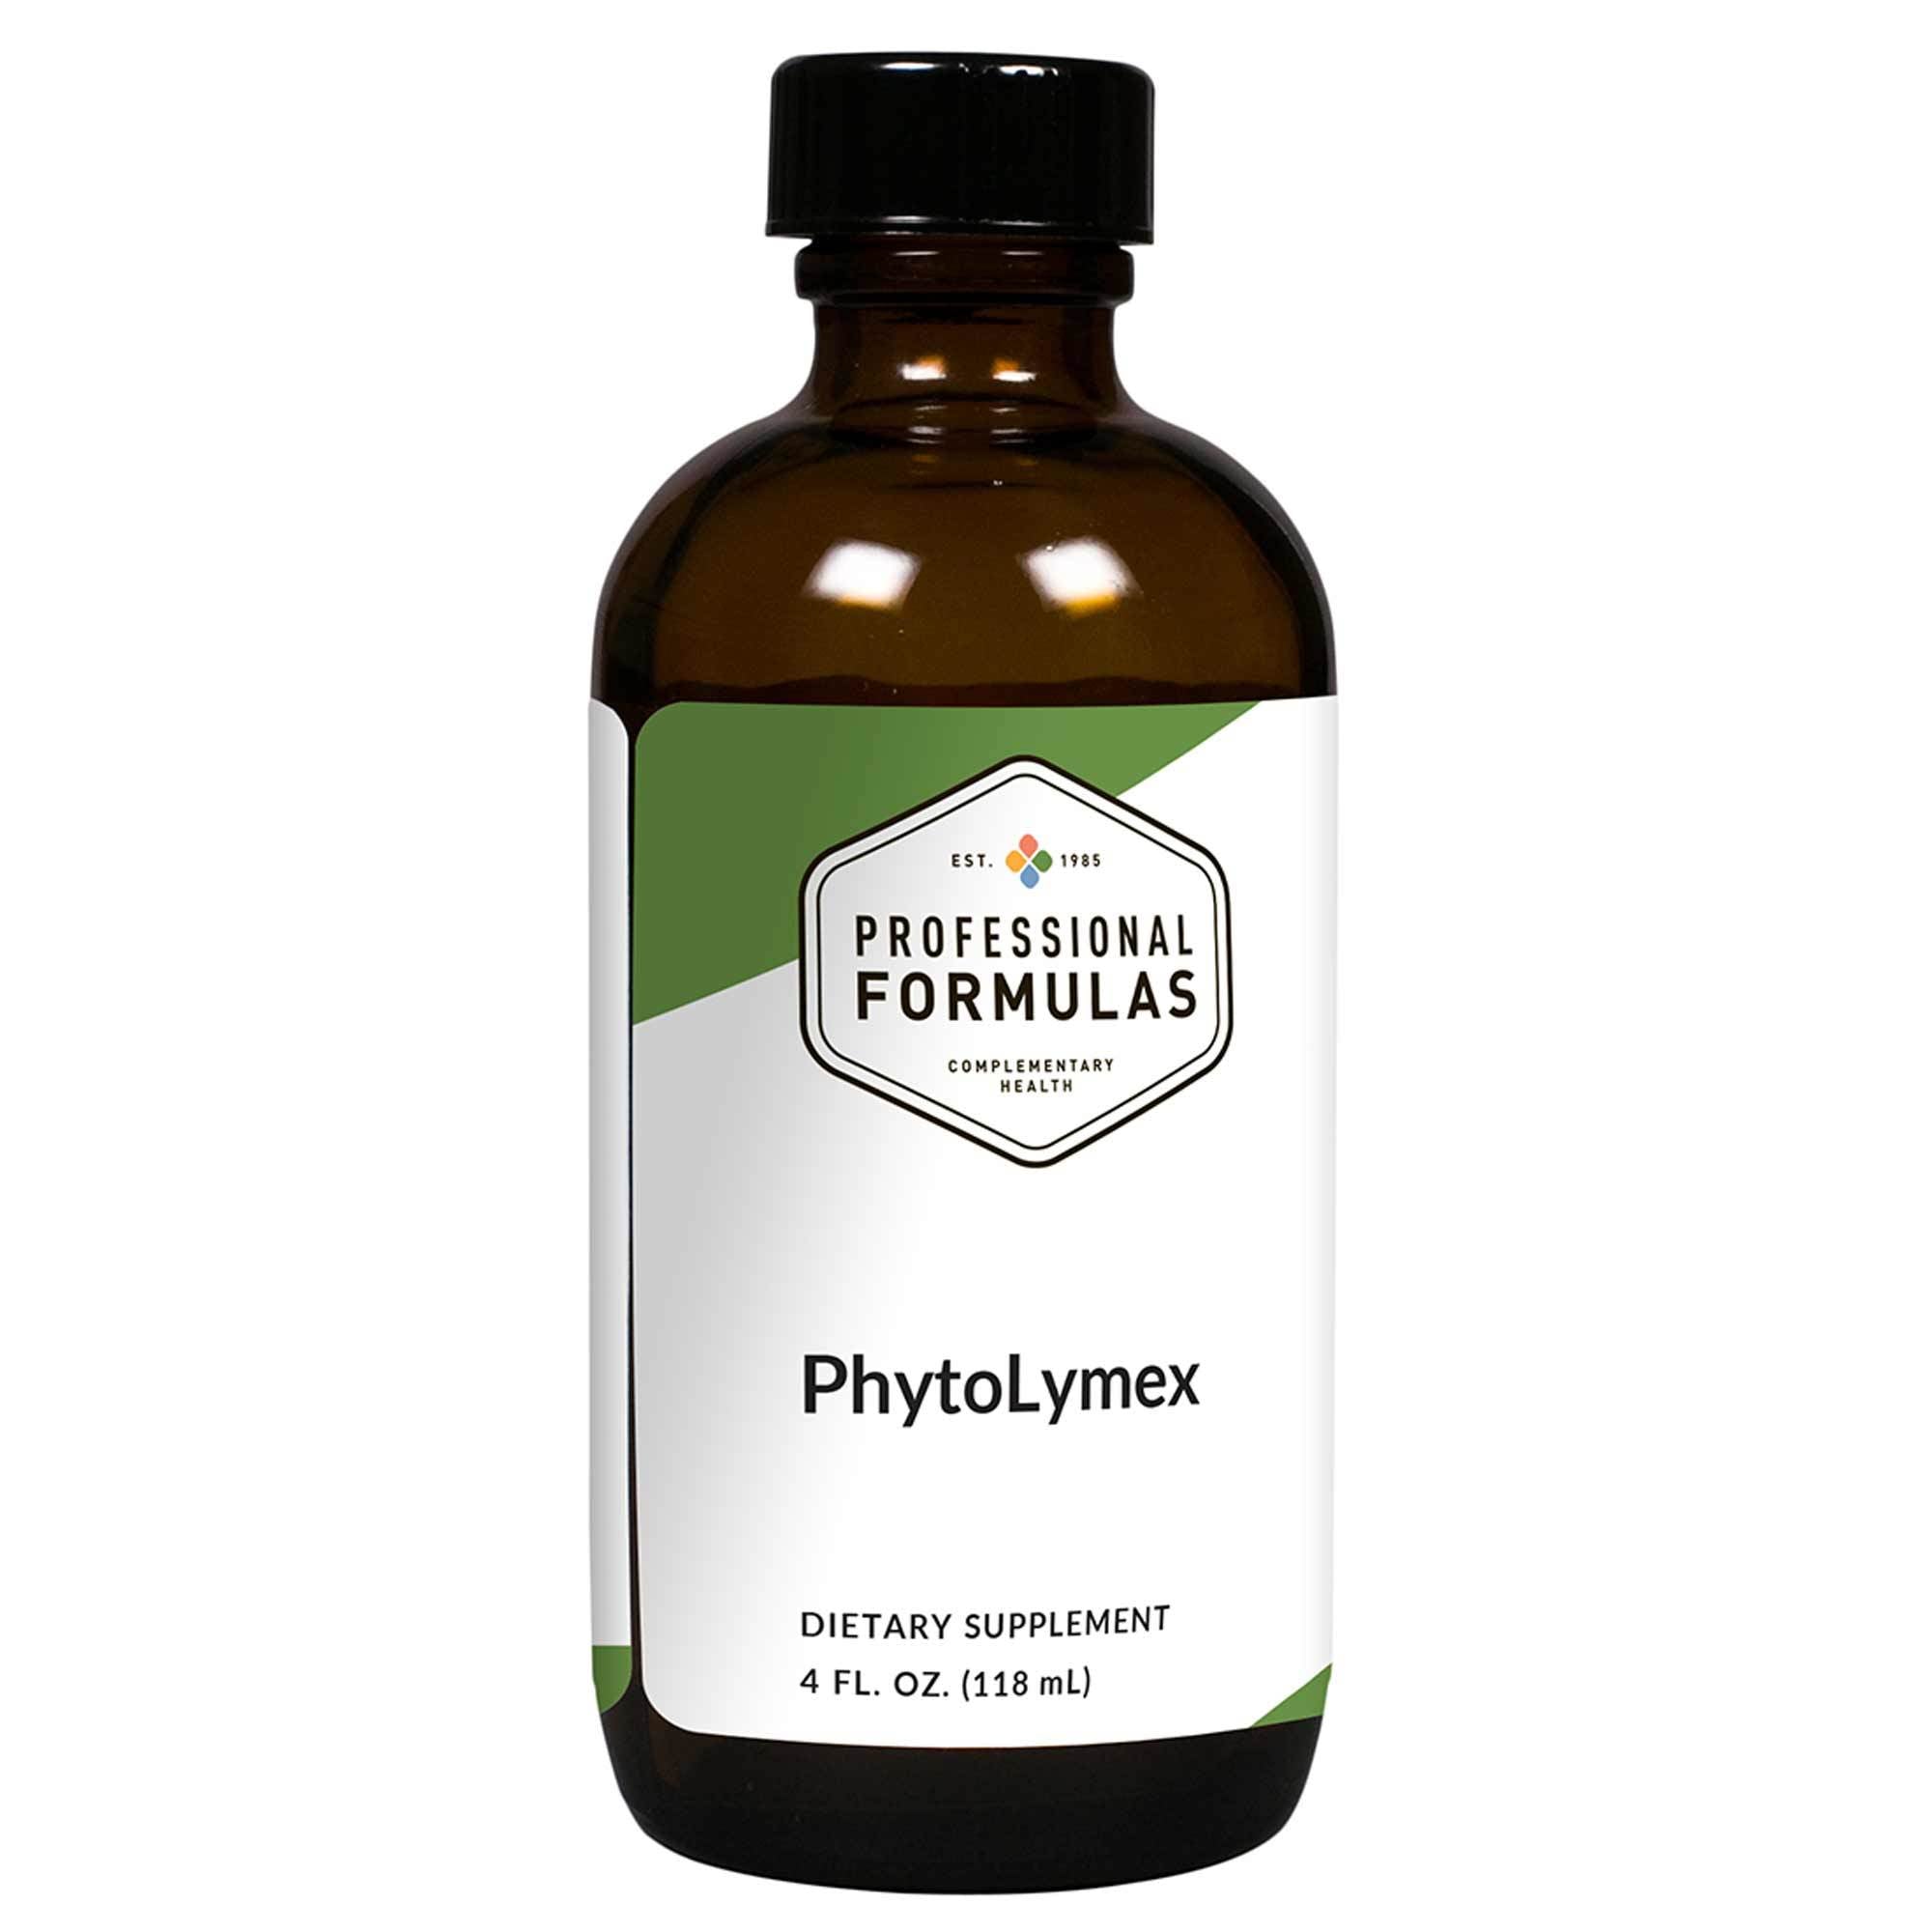 Professional Formulas - PhytoLymex - 4 FL. OZ. (118 mL)